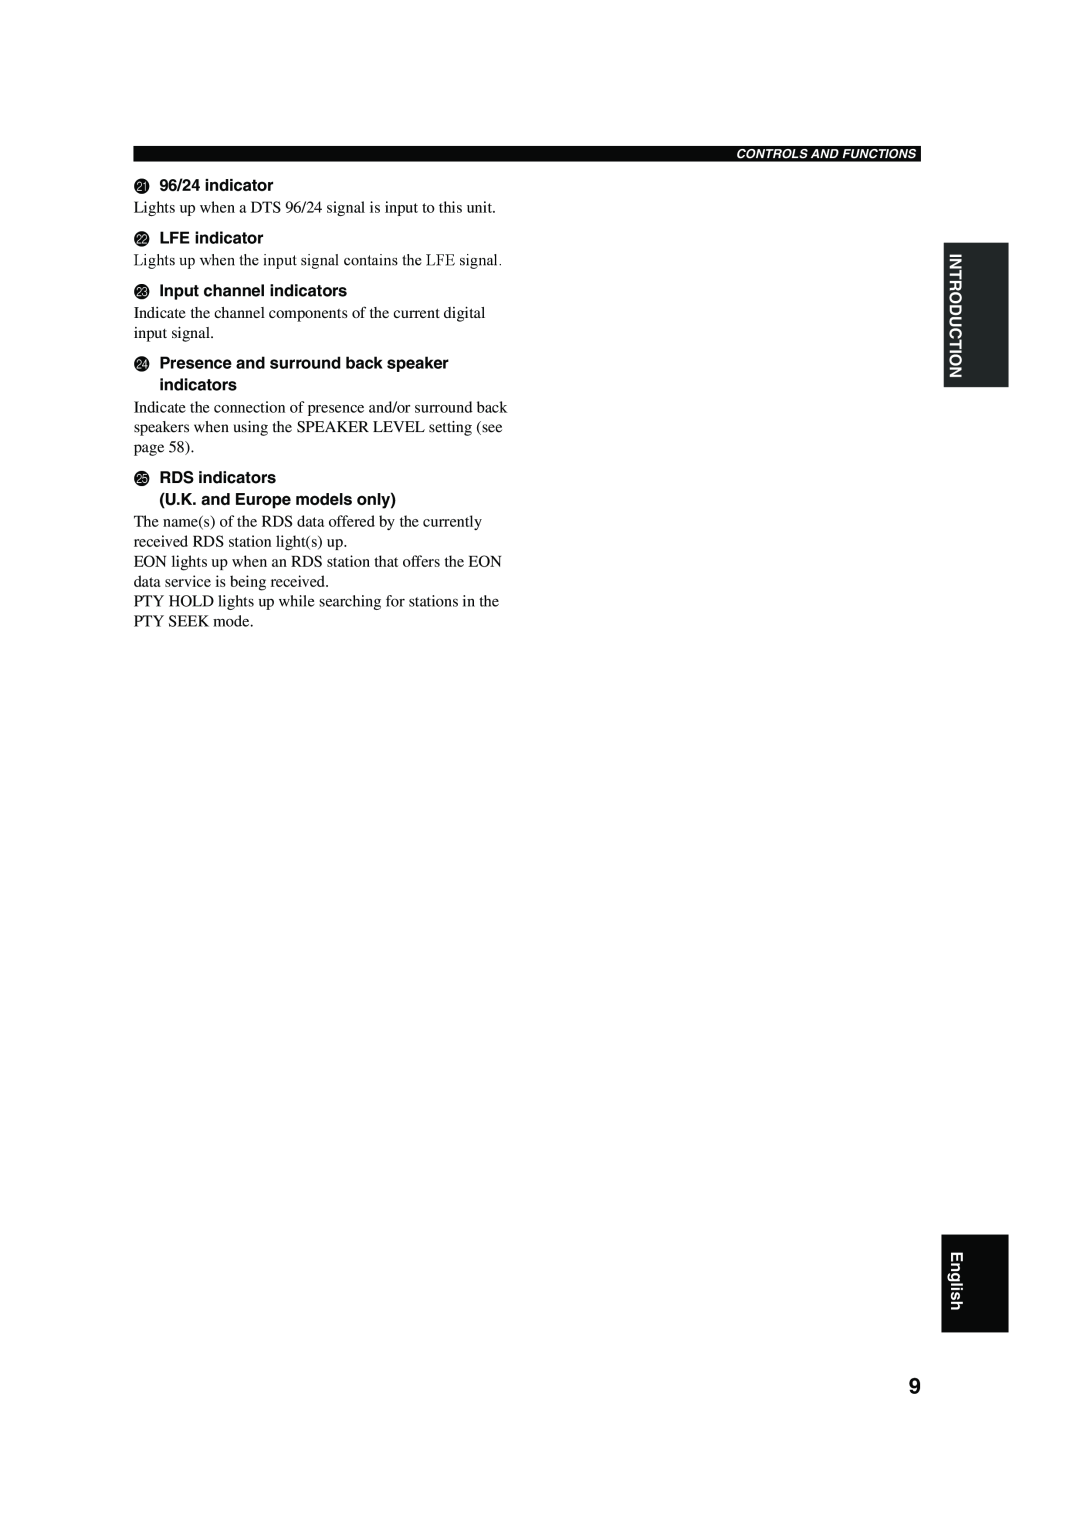 Yamaha RX-V650 K96/24 indicator, LLFE indicator, MInput channel indicators, NPresence and surround back speaker indicators 